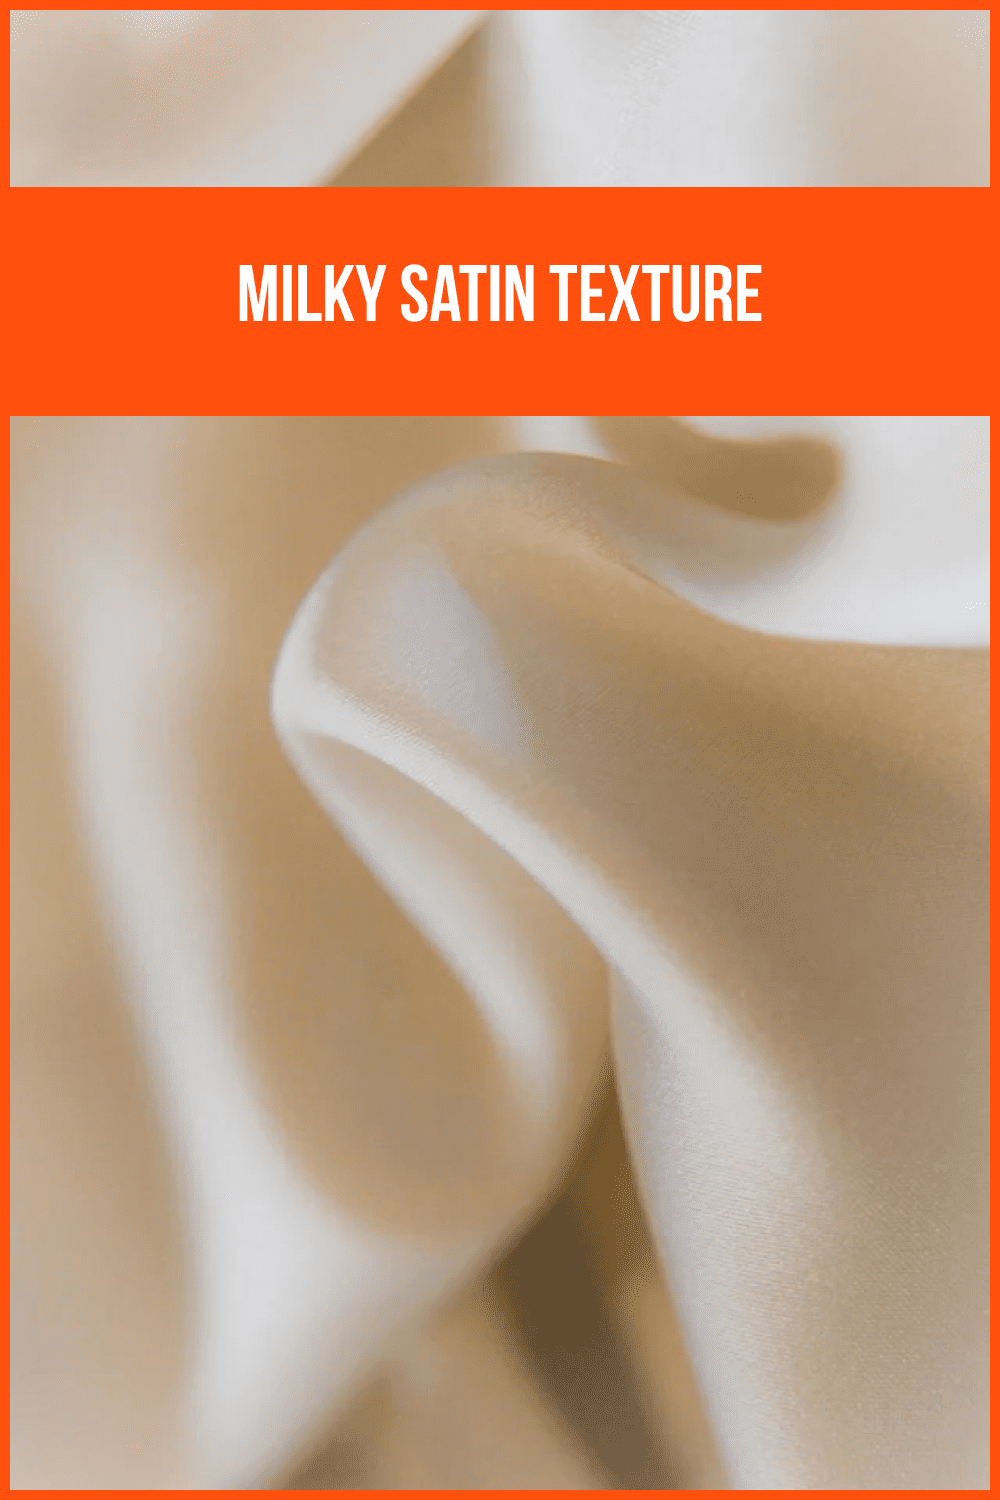 Milky Satin Texture.